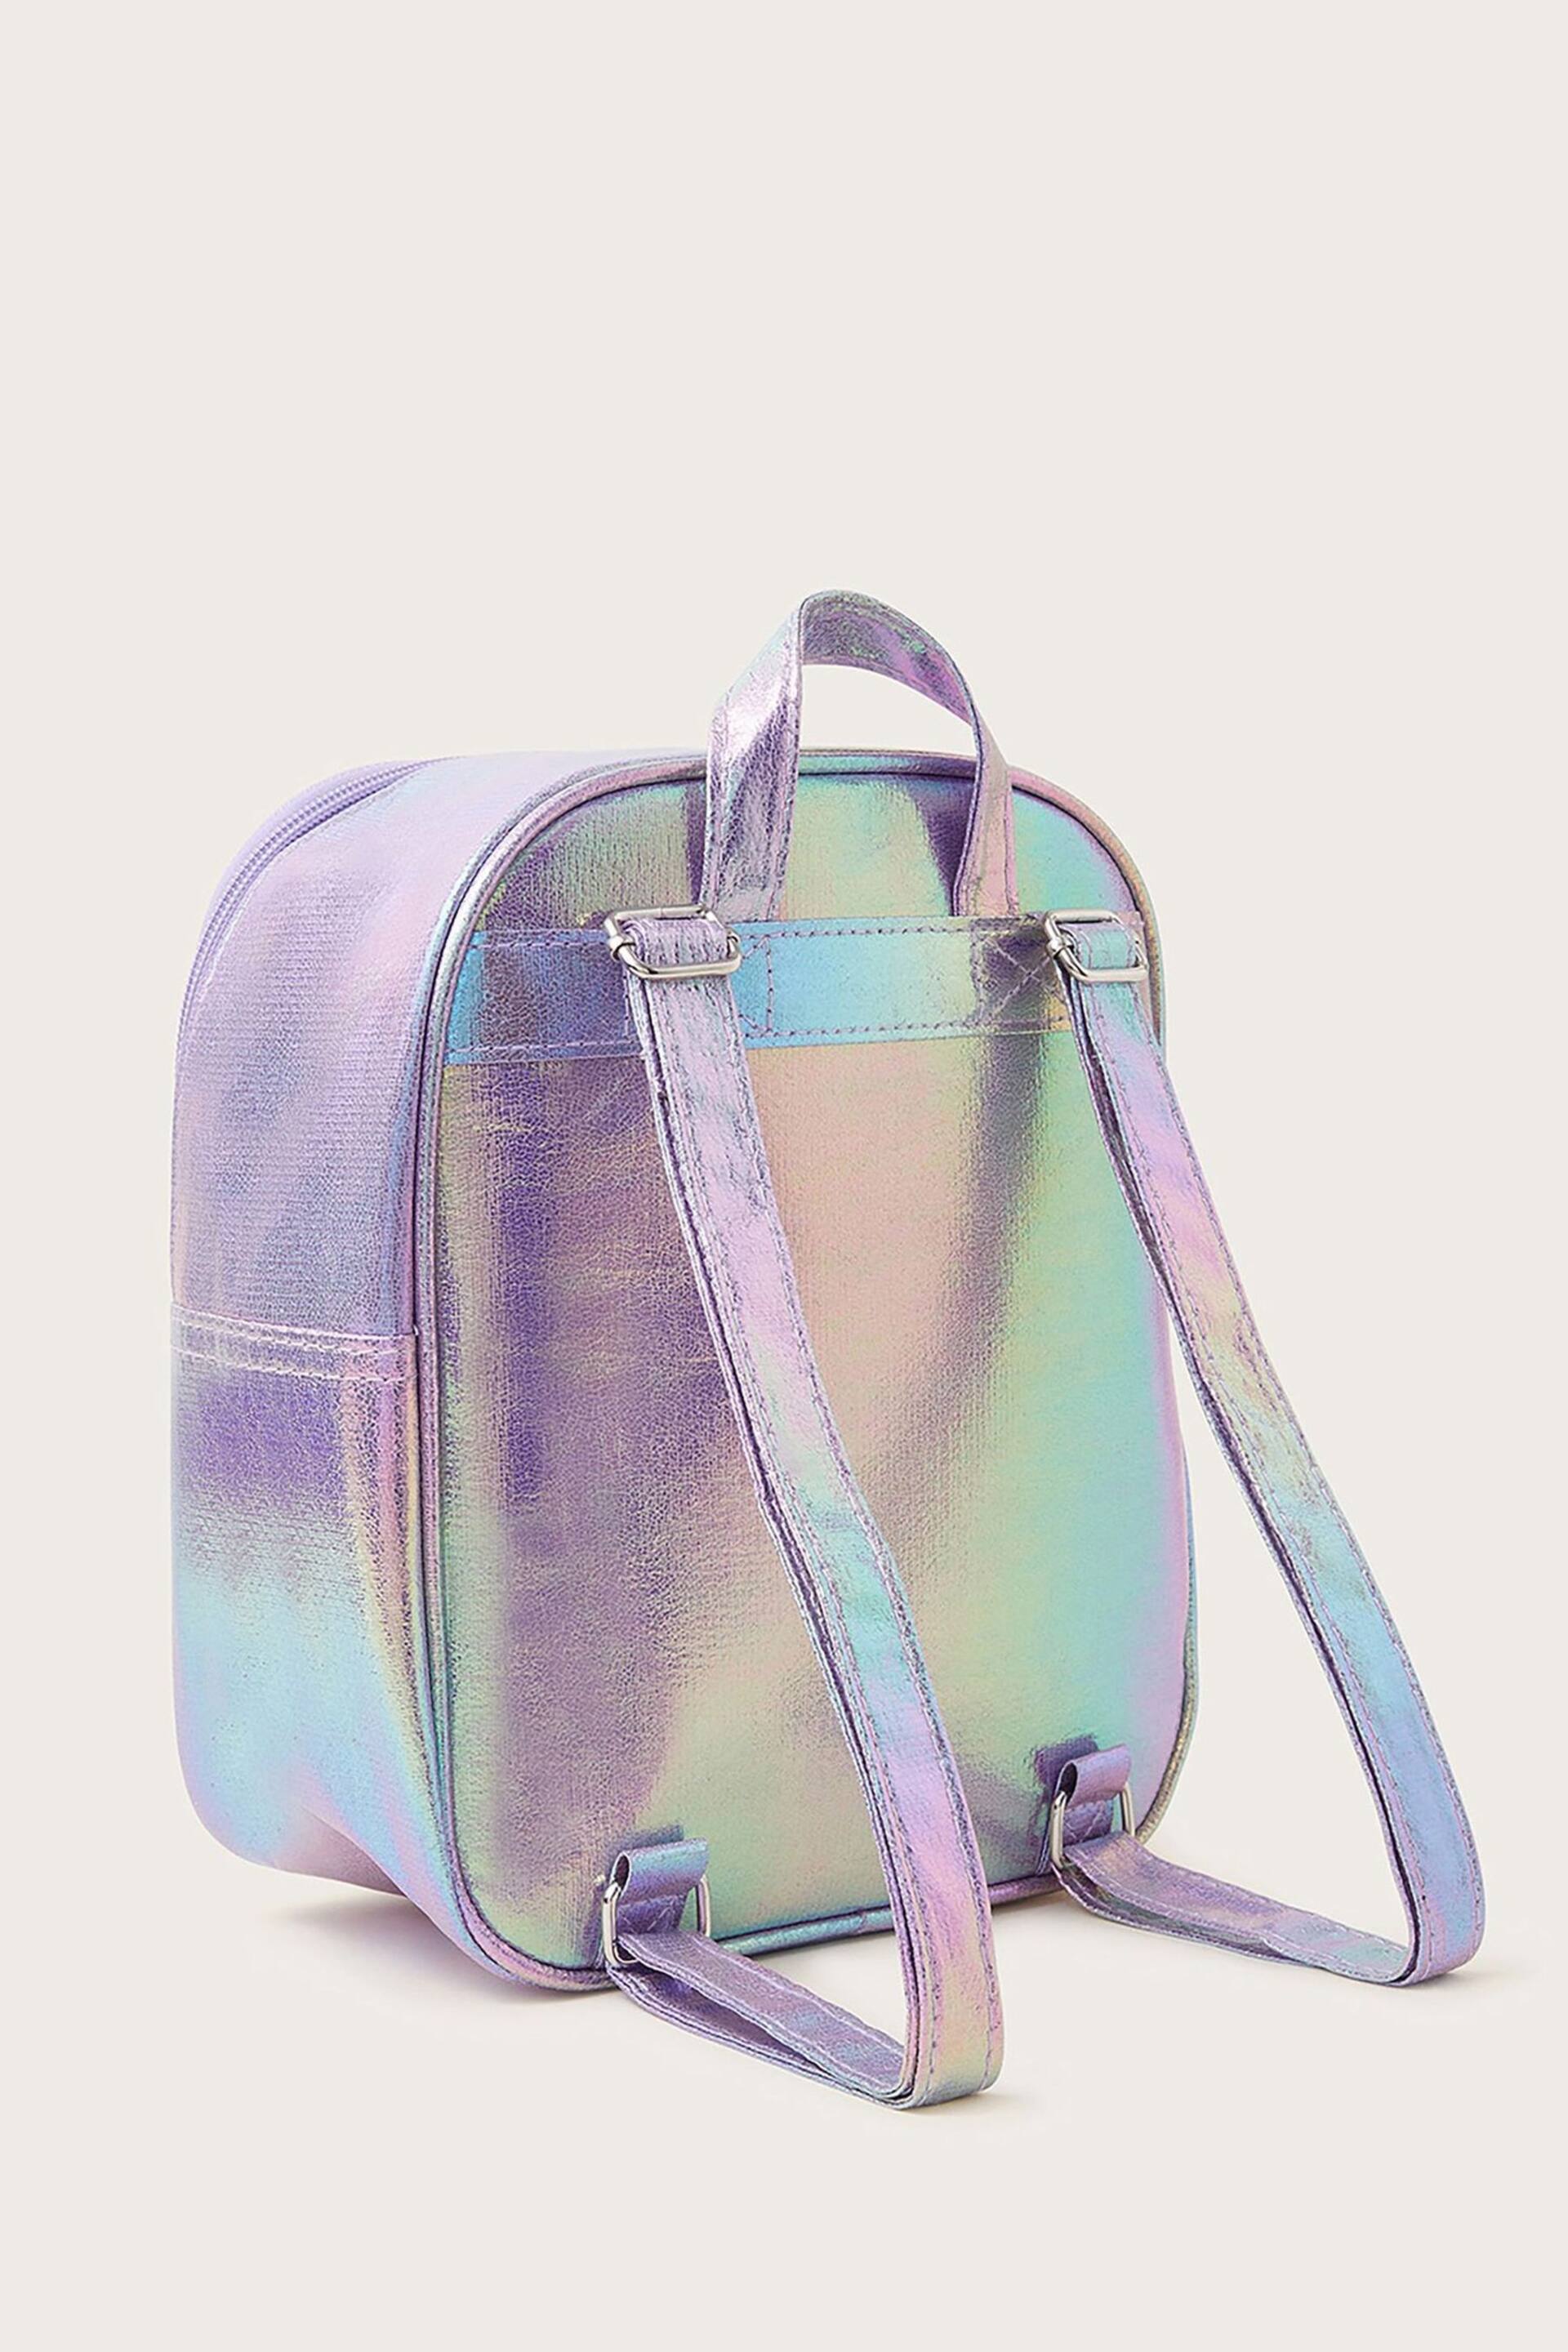 Monsoon Purple Jazzy Unicorn Backpack - Image 2 of 3